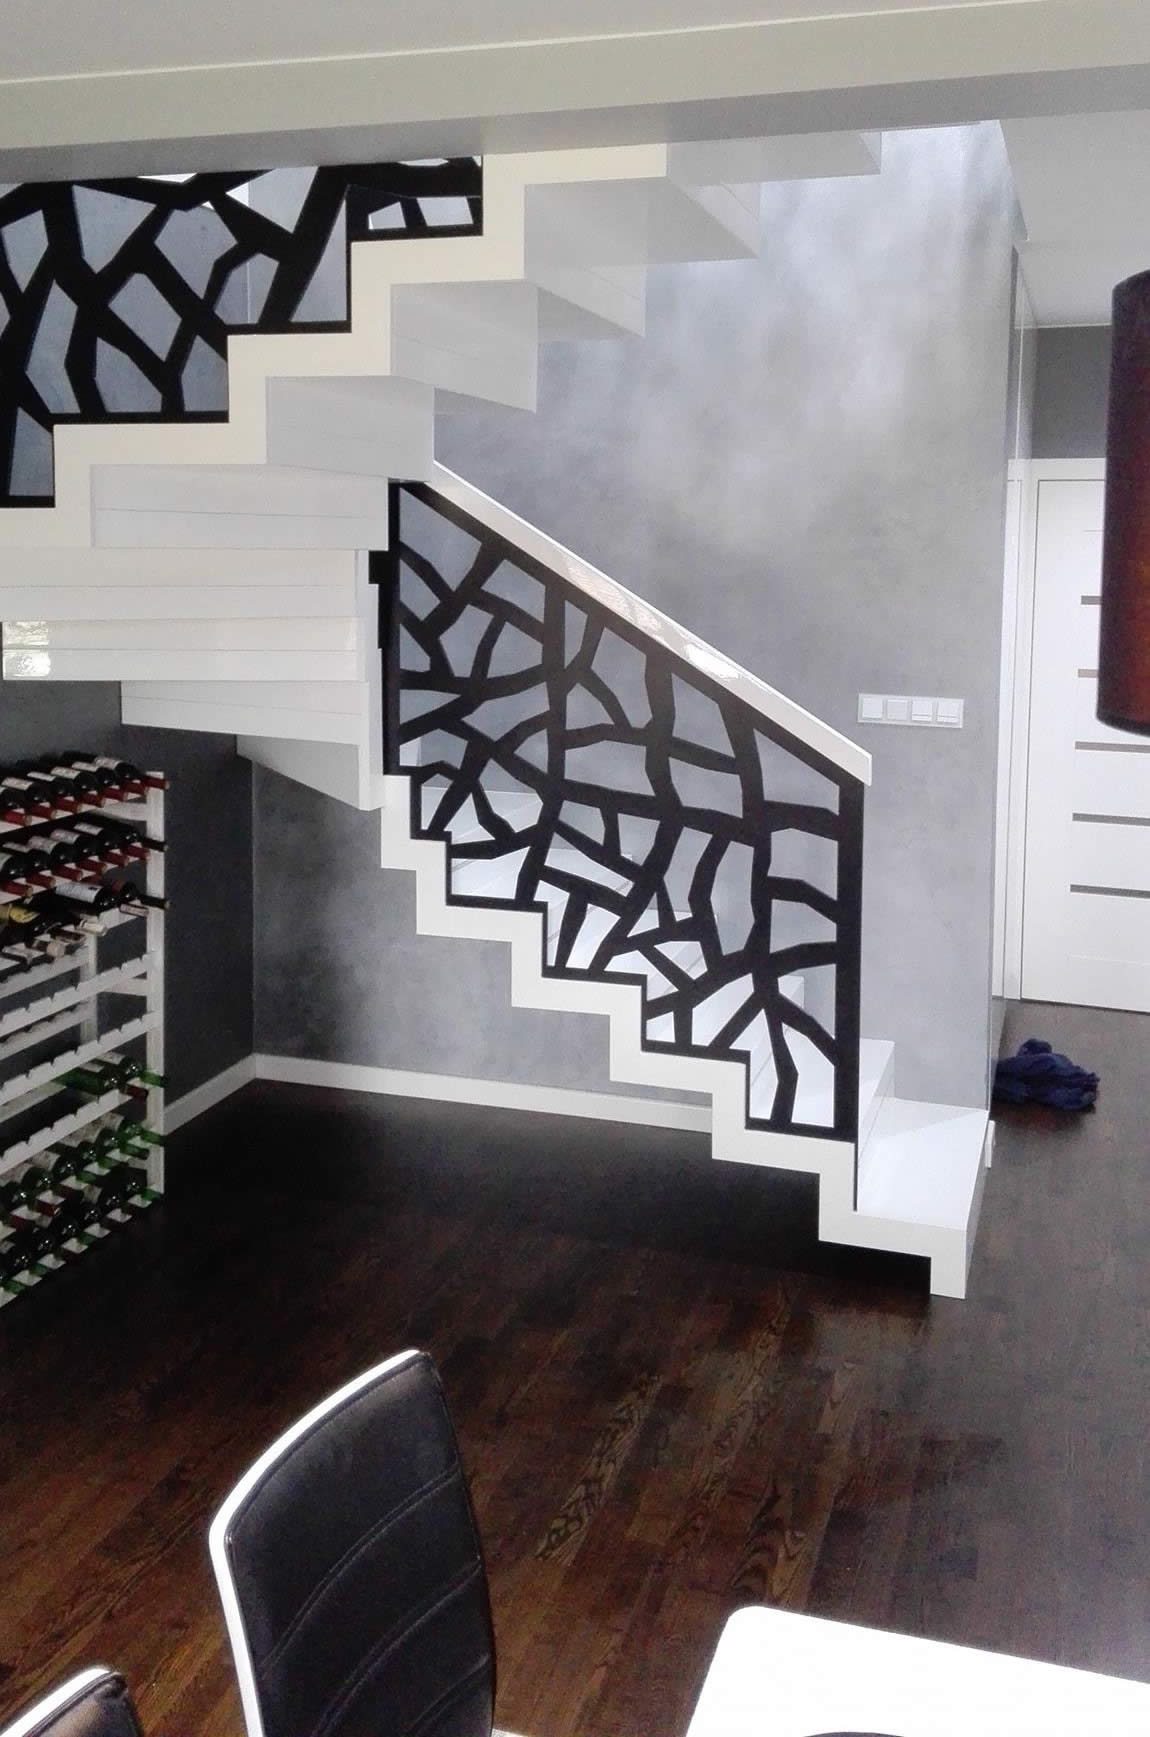 Zabiegowe schody dywanowe malowane na biało w kontraście z czarną balustradą ażurową.  Realizacja fi...